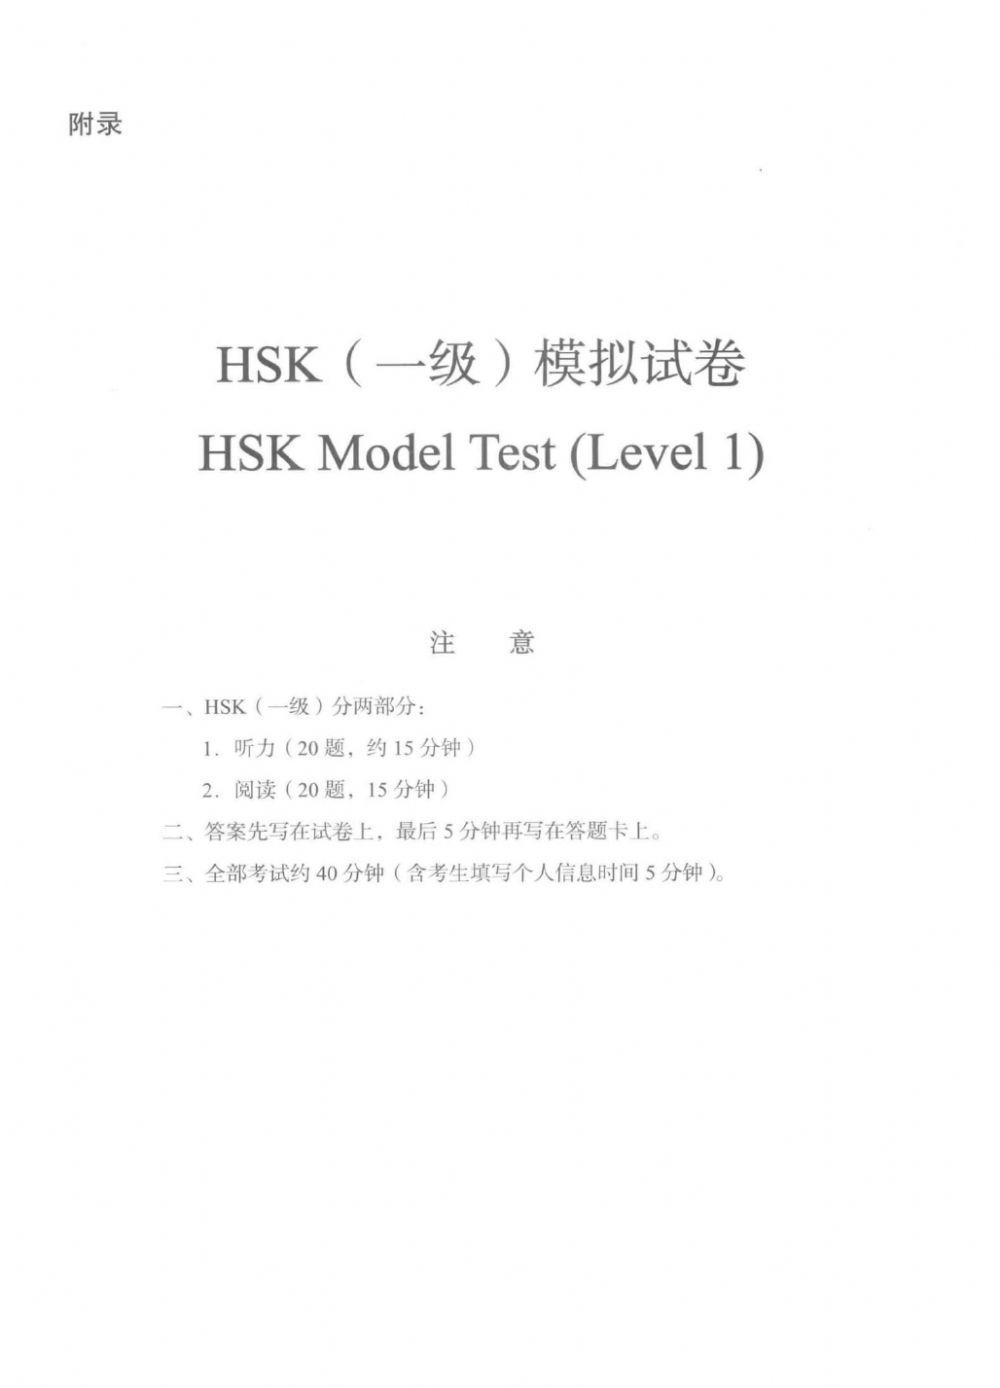 Hsk1 model test level1